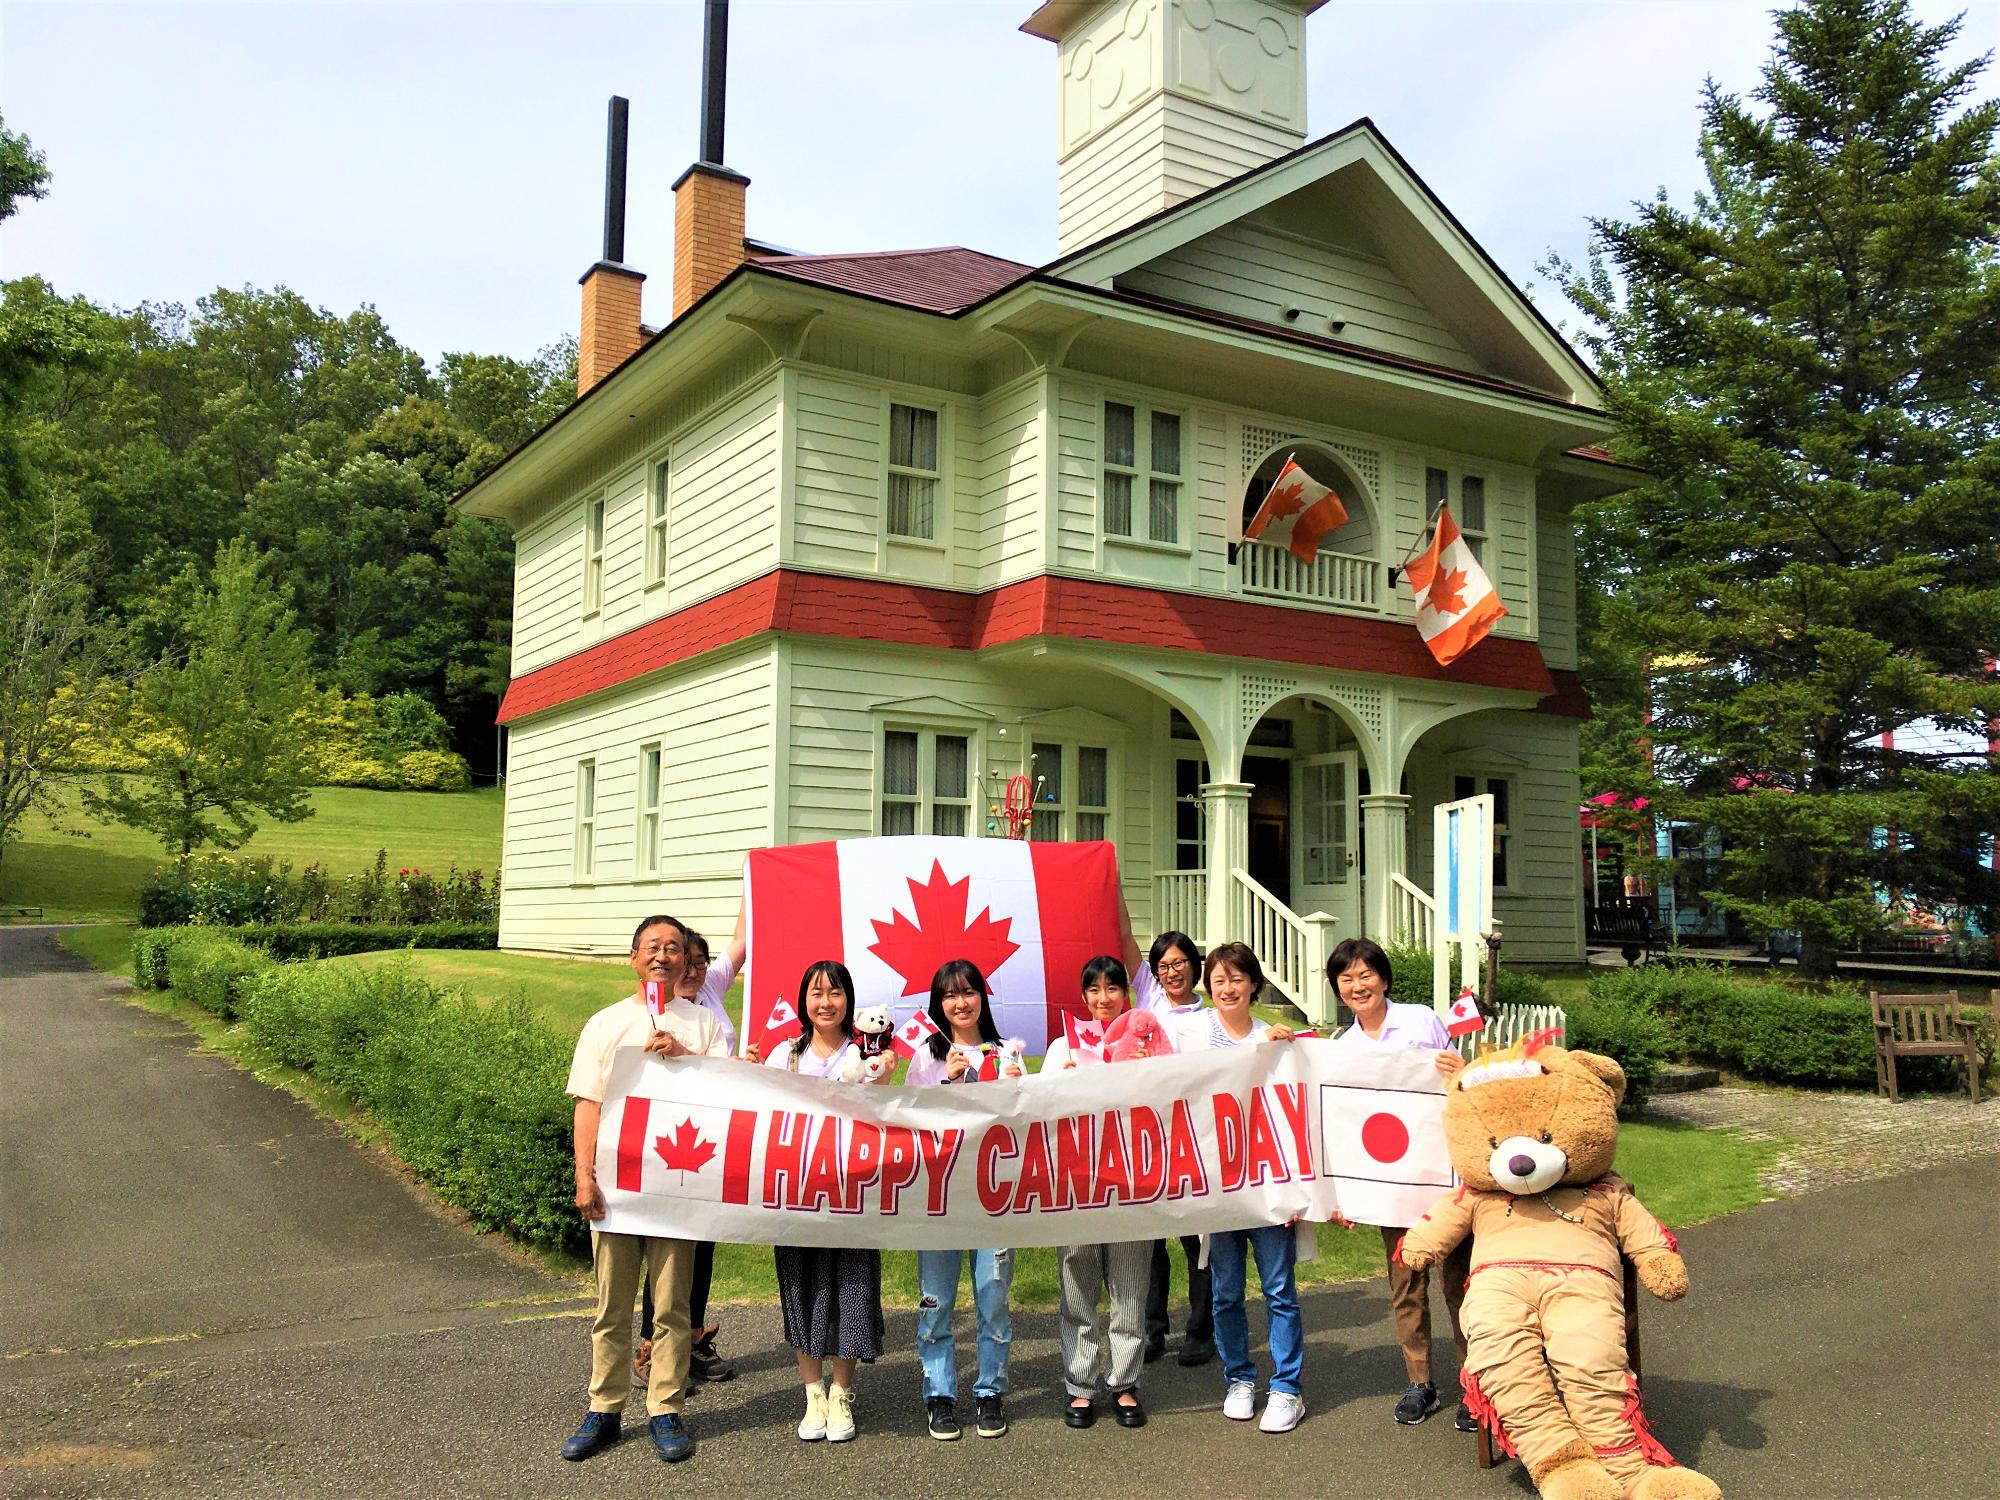 カナダと日本の国旗の間に「HAPPY CANADA DAY」と書かれた横断幕を持った8人の方の集合写真